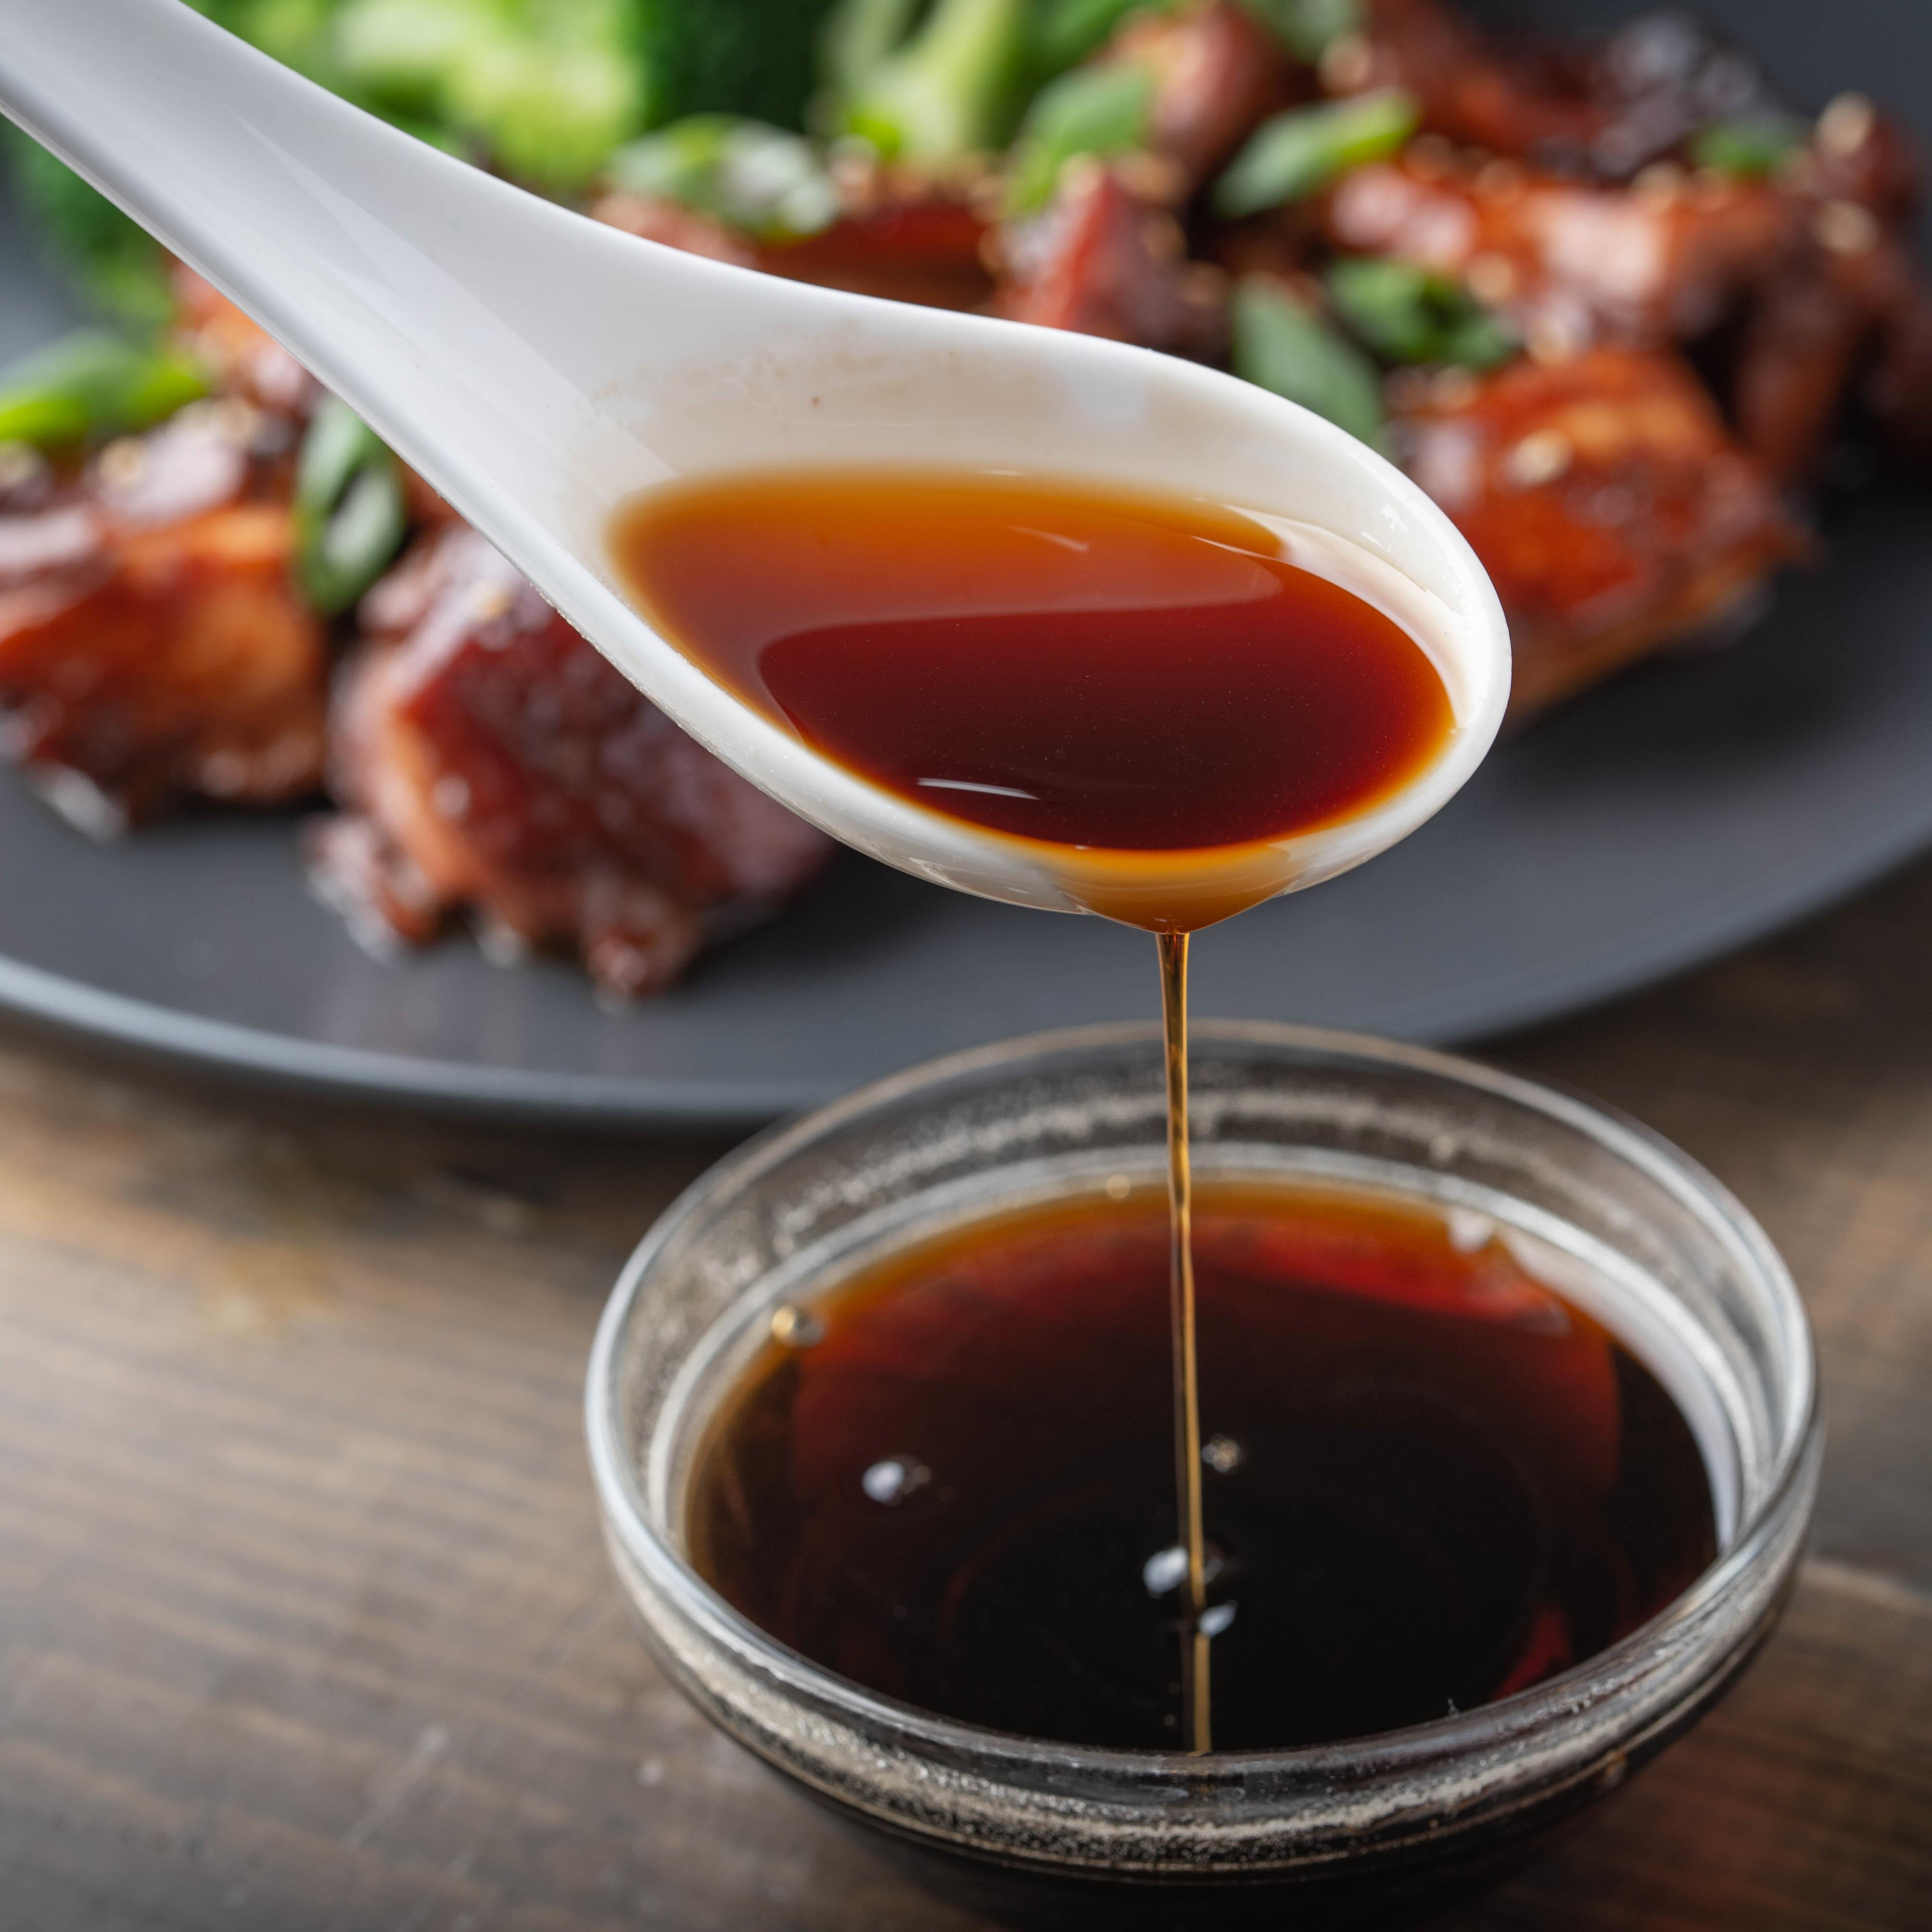 La sauce soja : tout connaître de cette sauce chinoise